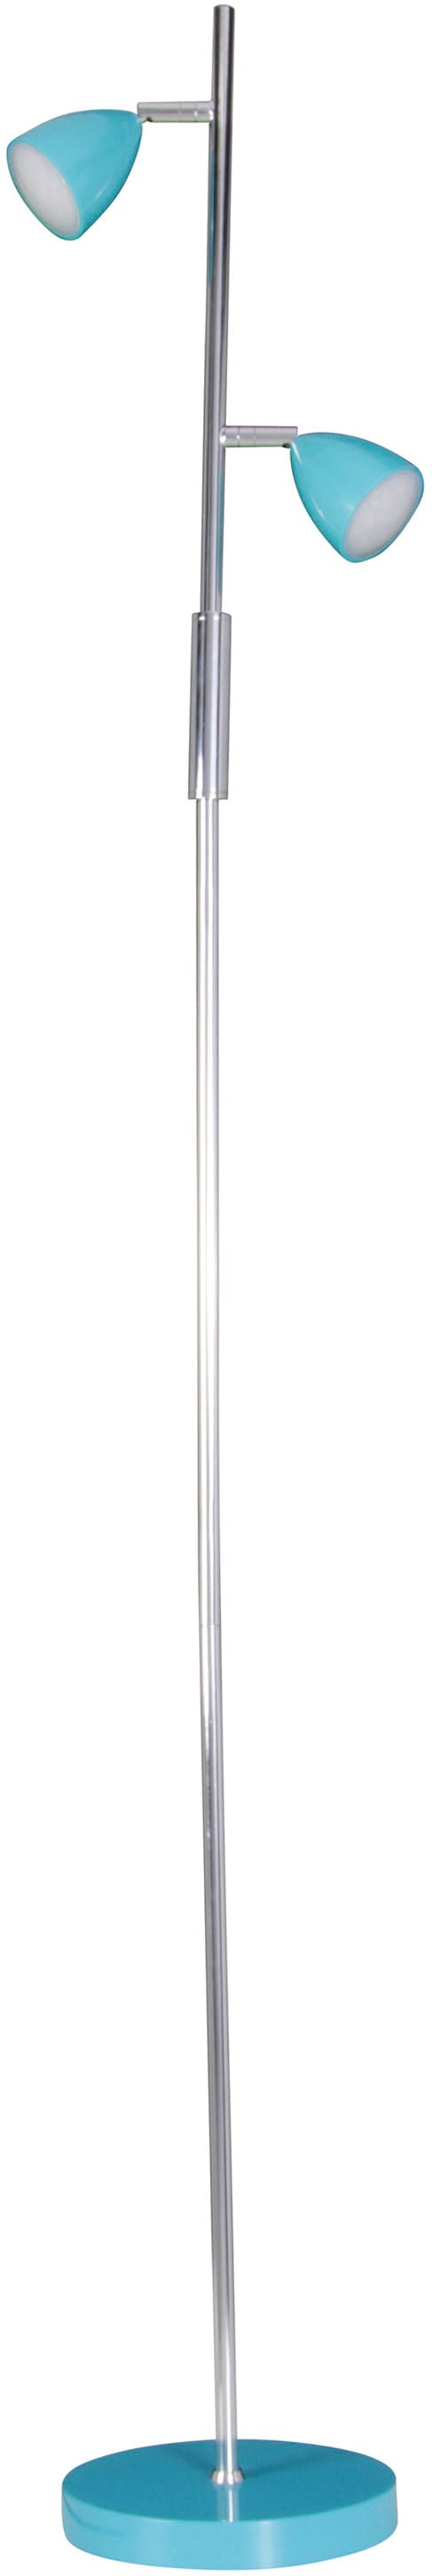 näve LED Stehlampe »Aaron«, 2 flammig-flammig, 2flg., h: 145cm, Schirme und Fuß in türkis/chrom, An/Aus-Schalter